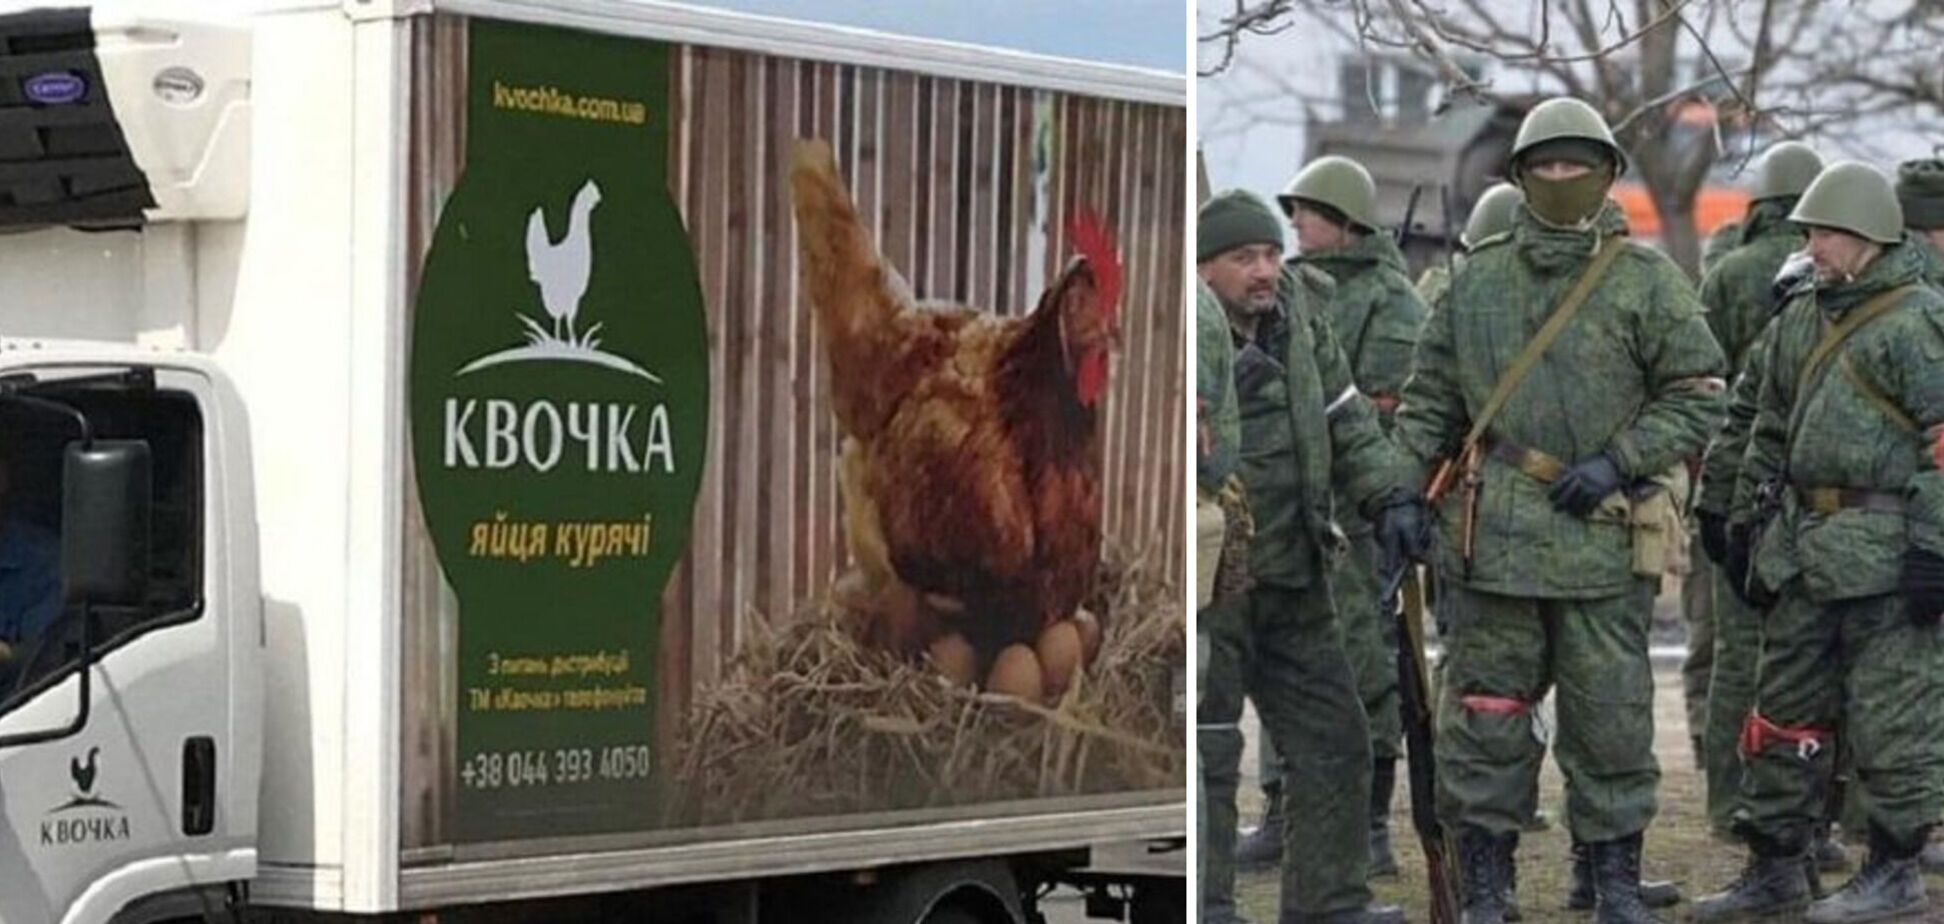 Осторожно: российские оккупанты используют украденные автомобили с надписью 'Квочка'!